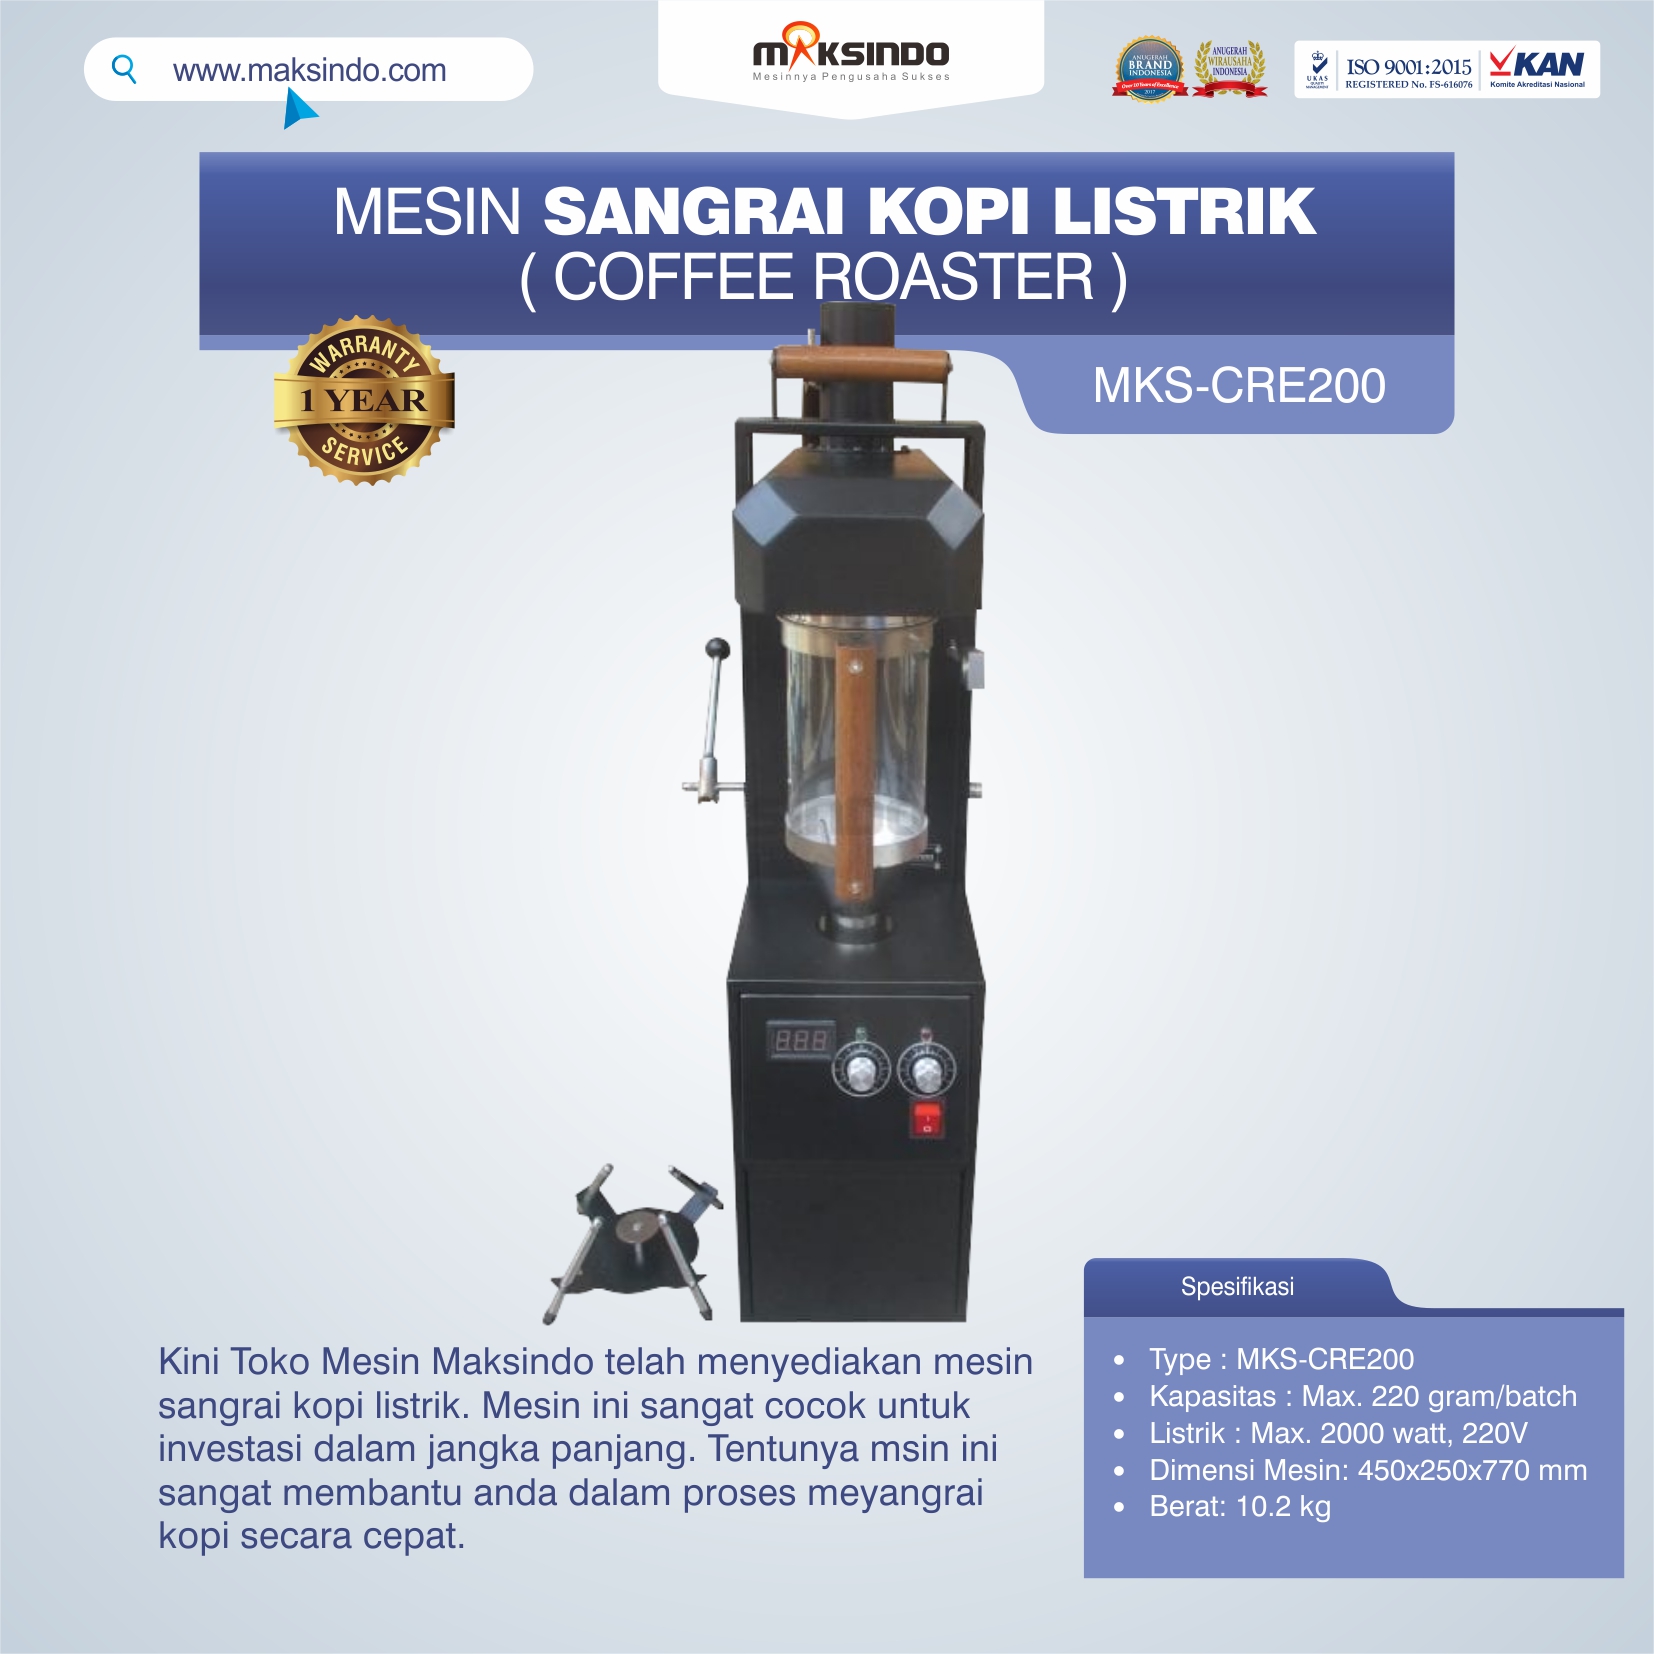 Jual Mesin Sangrai Kopi Listrik (Coffee Roaster) MKS-CRE200 di Bekasi